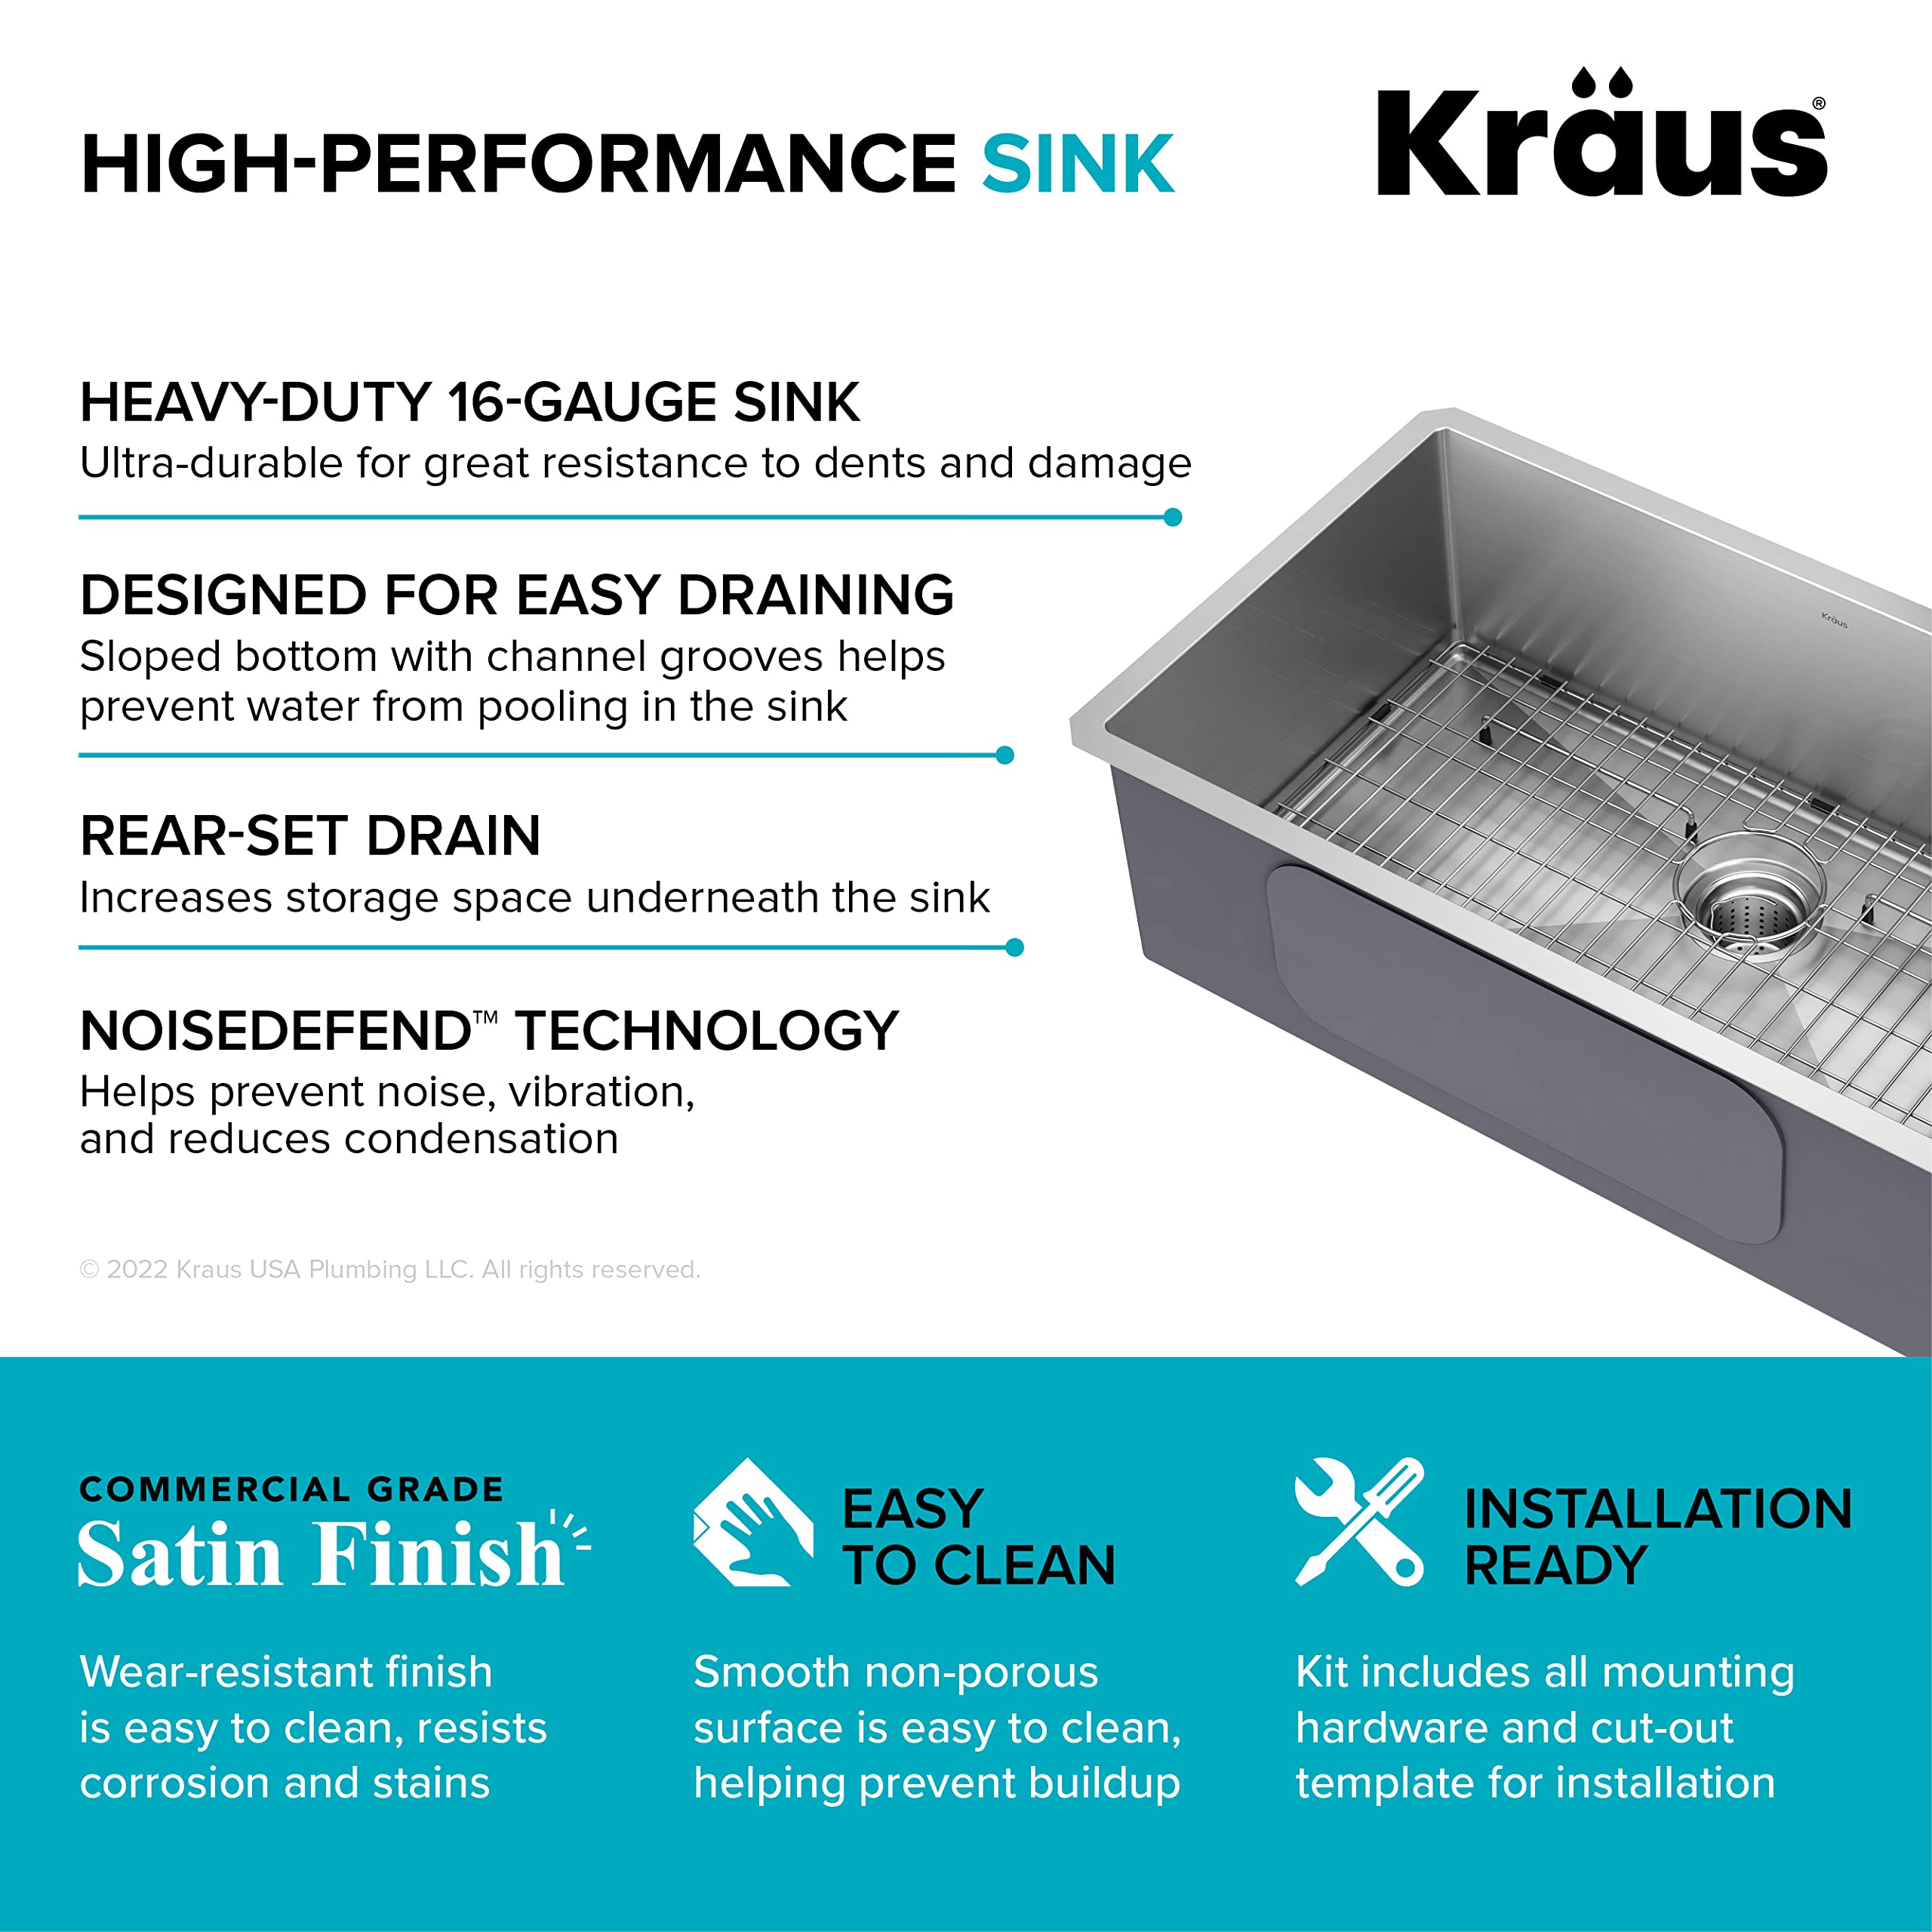 Kraus KHU100-32 Standart PRO 16 Gauge Undermount Single Bowl Stainless Steel Kitchen Sink, 32 Inch